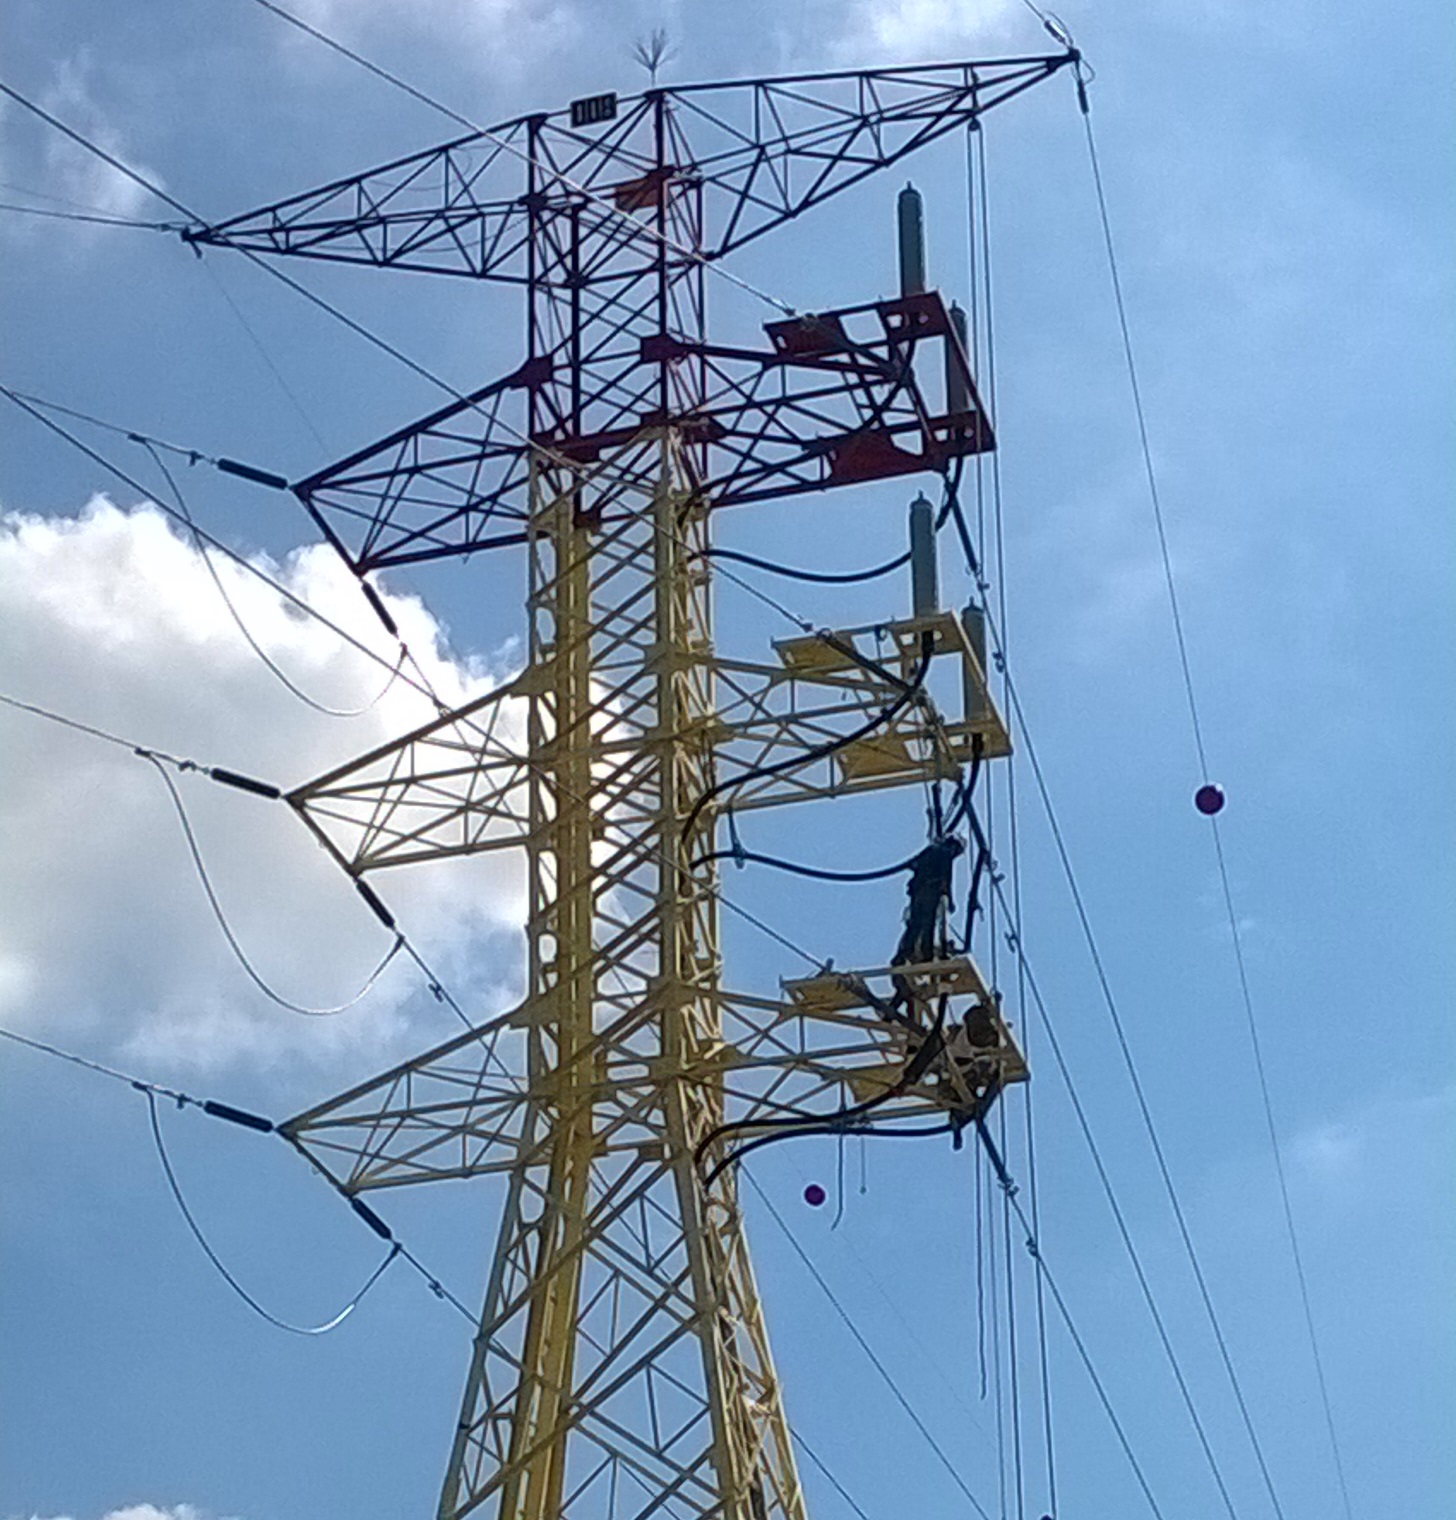 FCC Industrial finaliza  la subestación eléctrica y las líneas de alta tensión del  proyecto “fase III distribución  Sur “en Veracruz, México